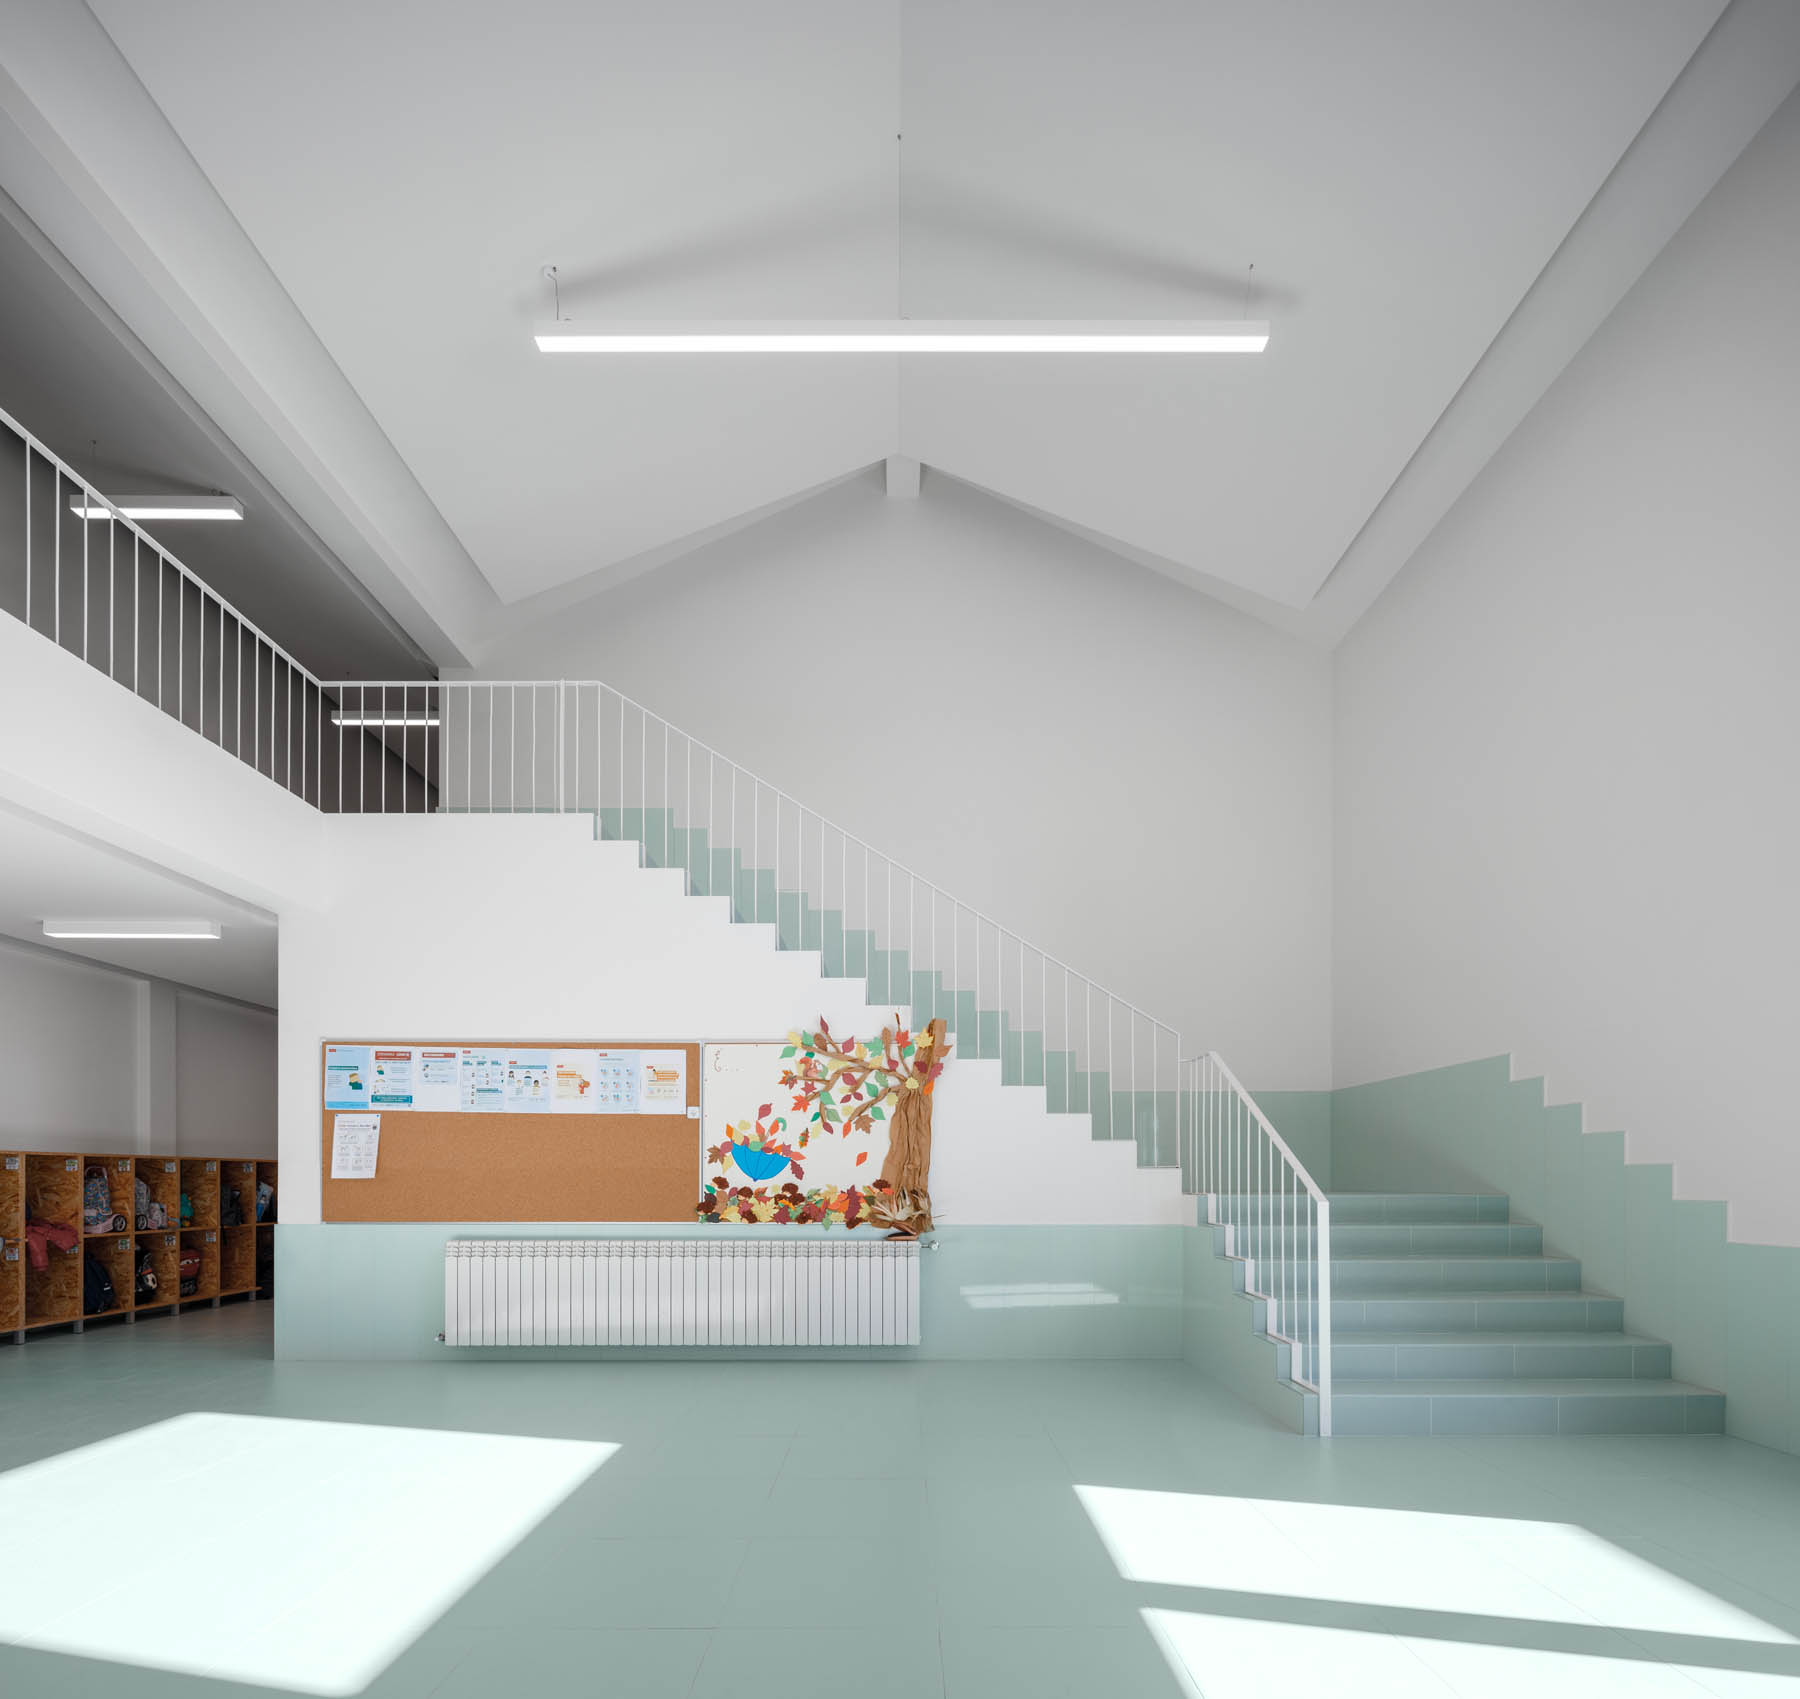 Escola Basica de São Bernardo em Aveiro do atelier de arquitect